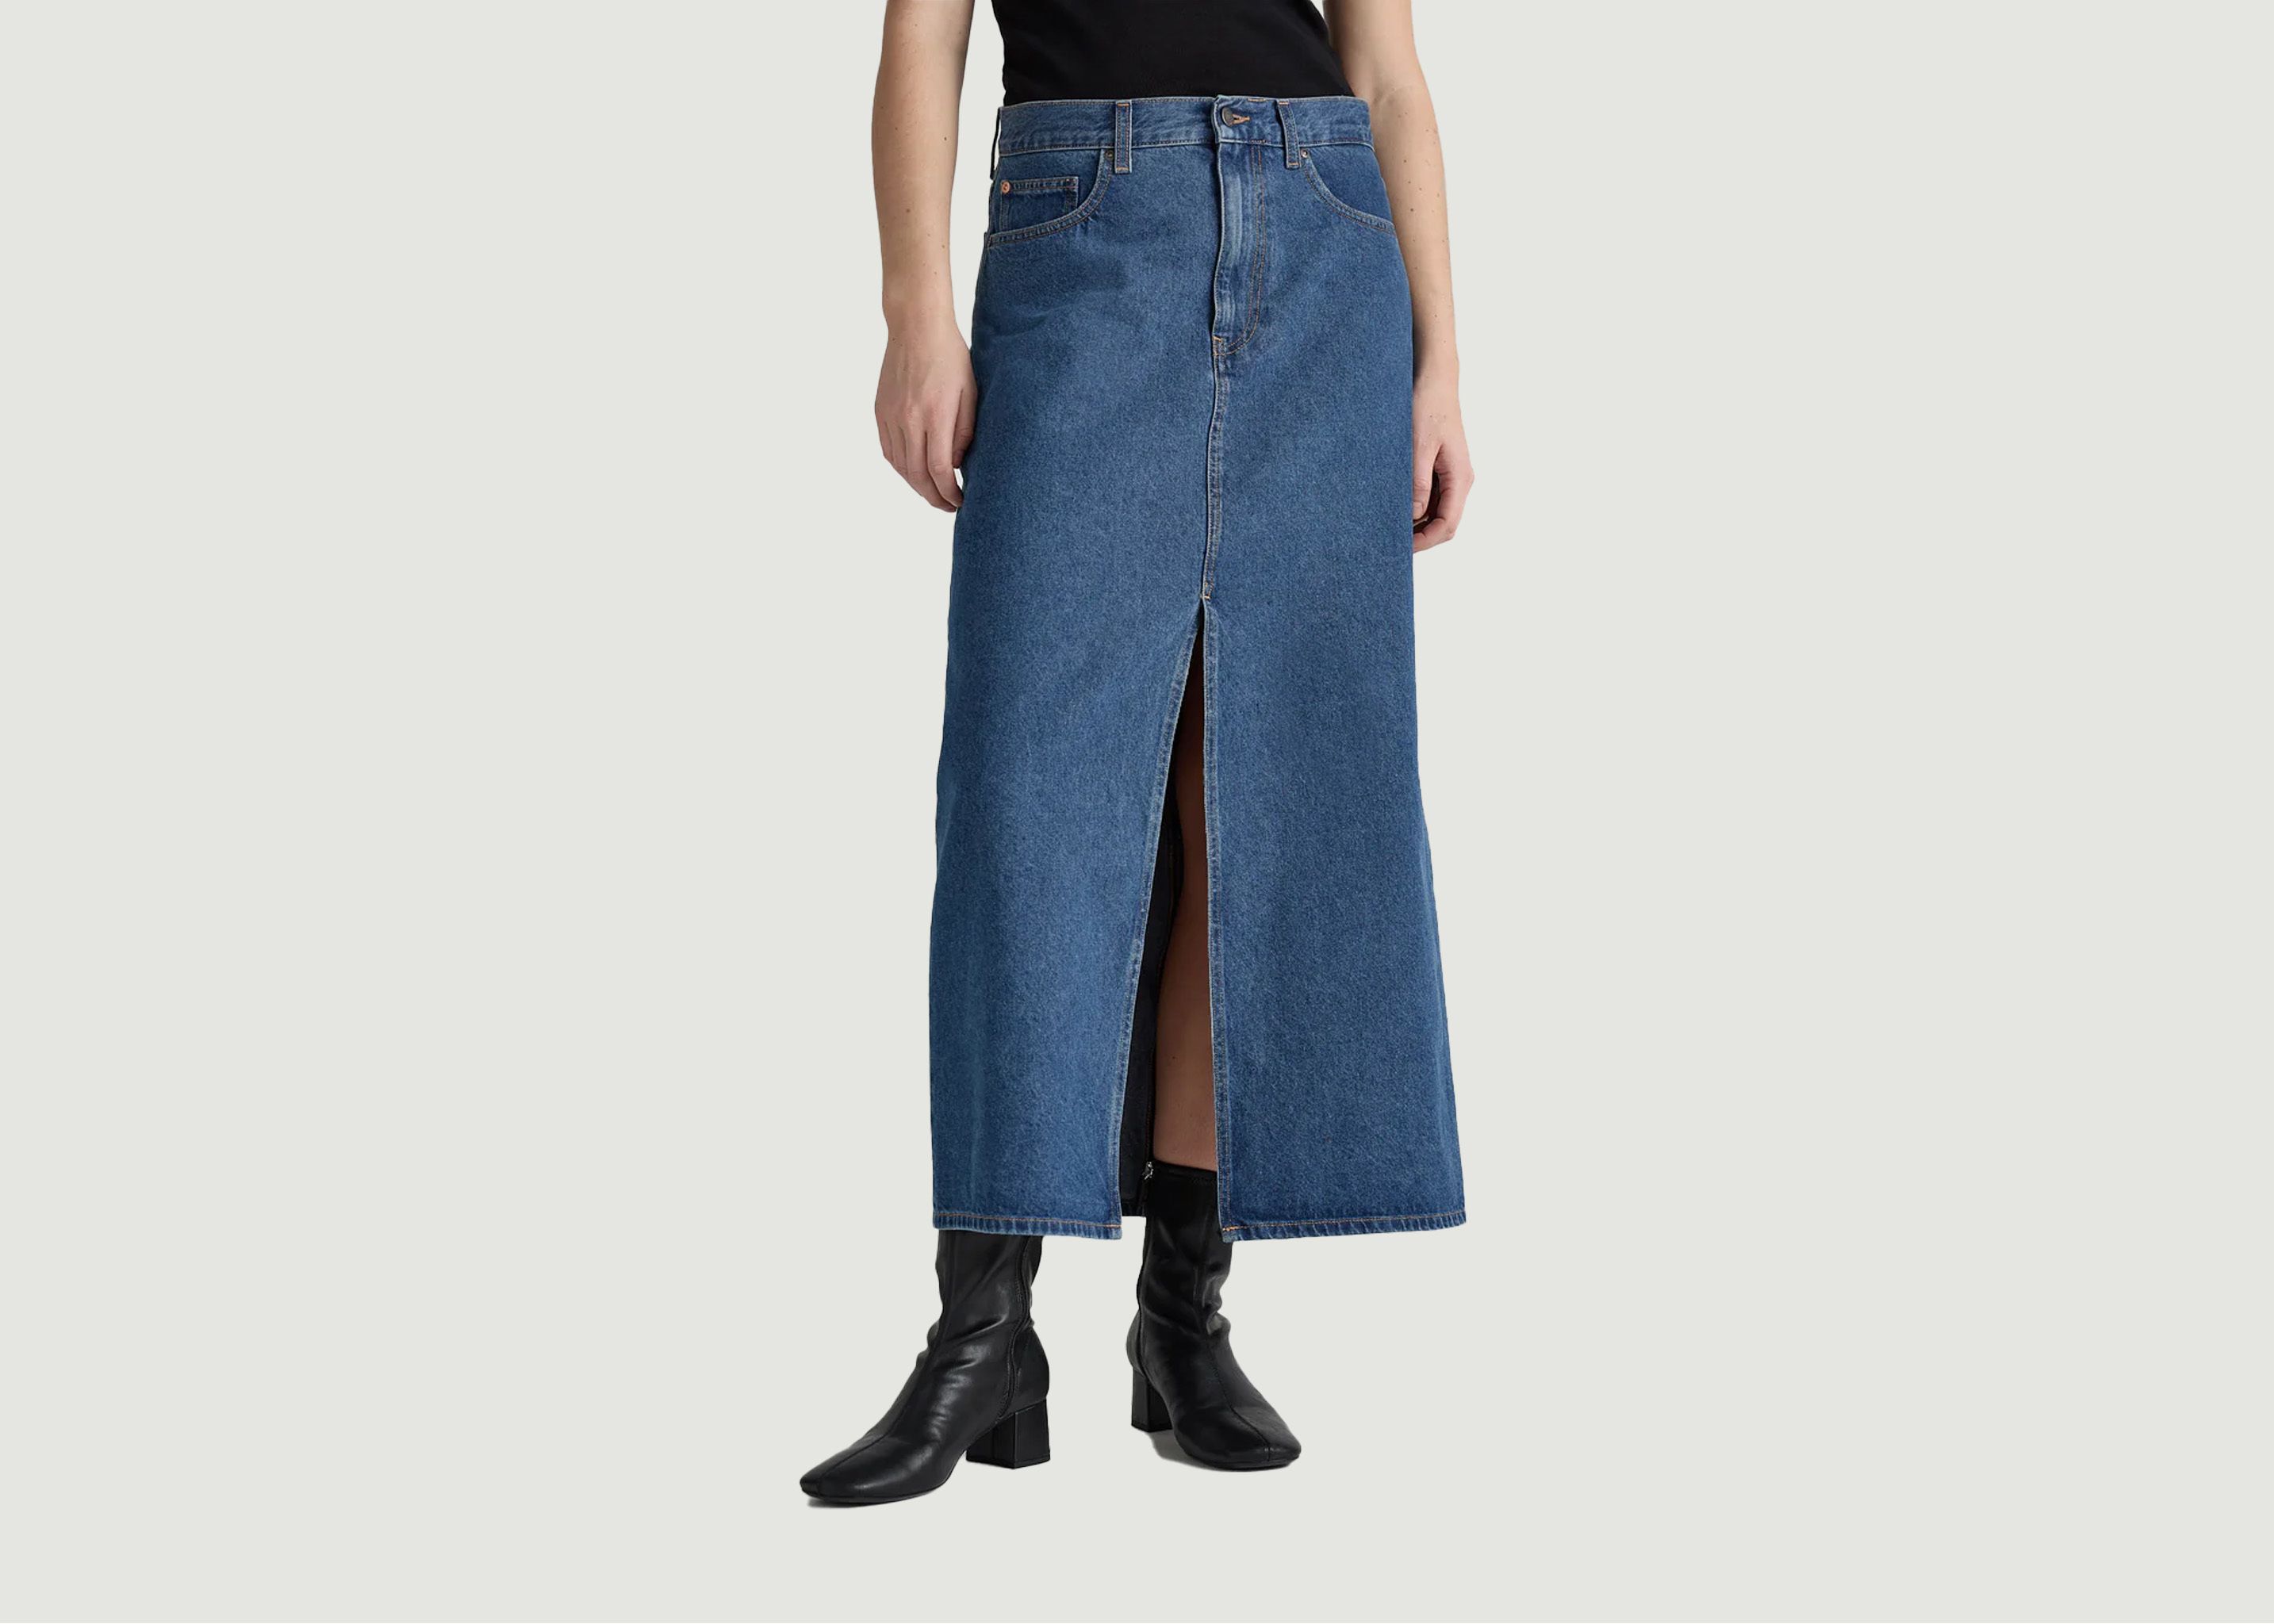 Lena Long Skirt - Mud Jeans